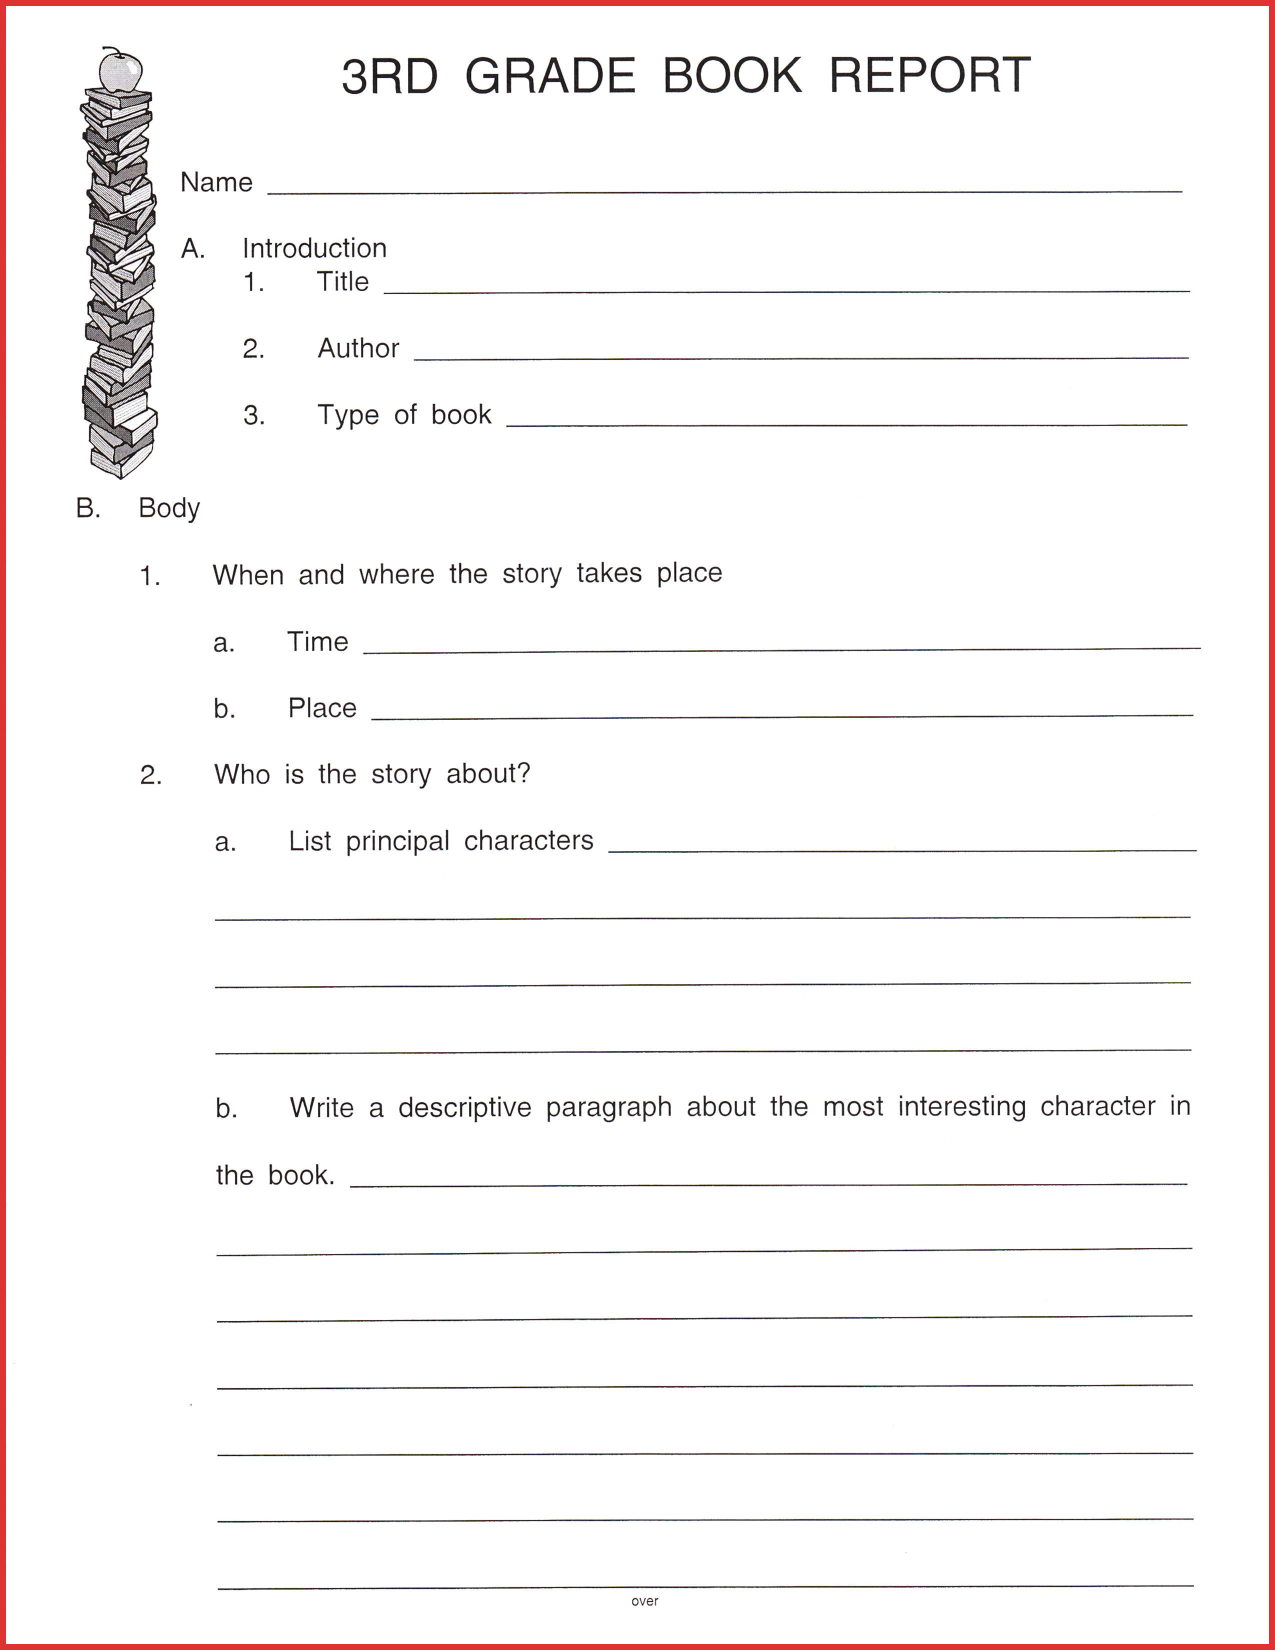 Fresh 3Rd Grade Book Report Template | Job Latter With Regard To Book Report Template 2Nd Grade